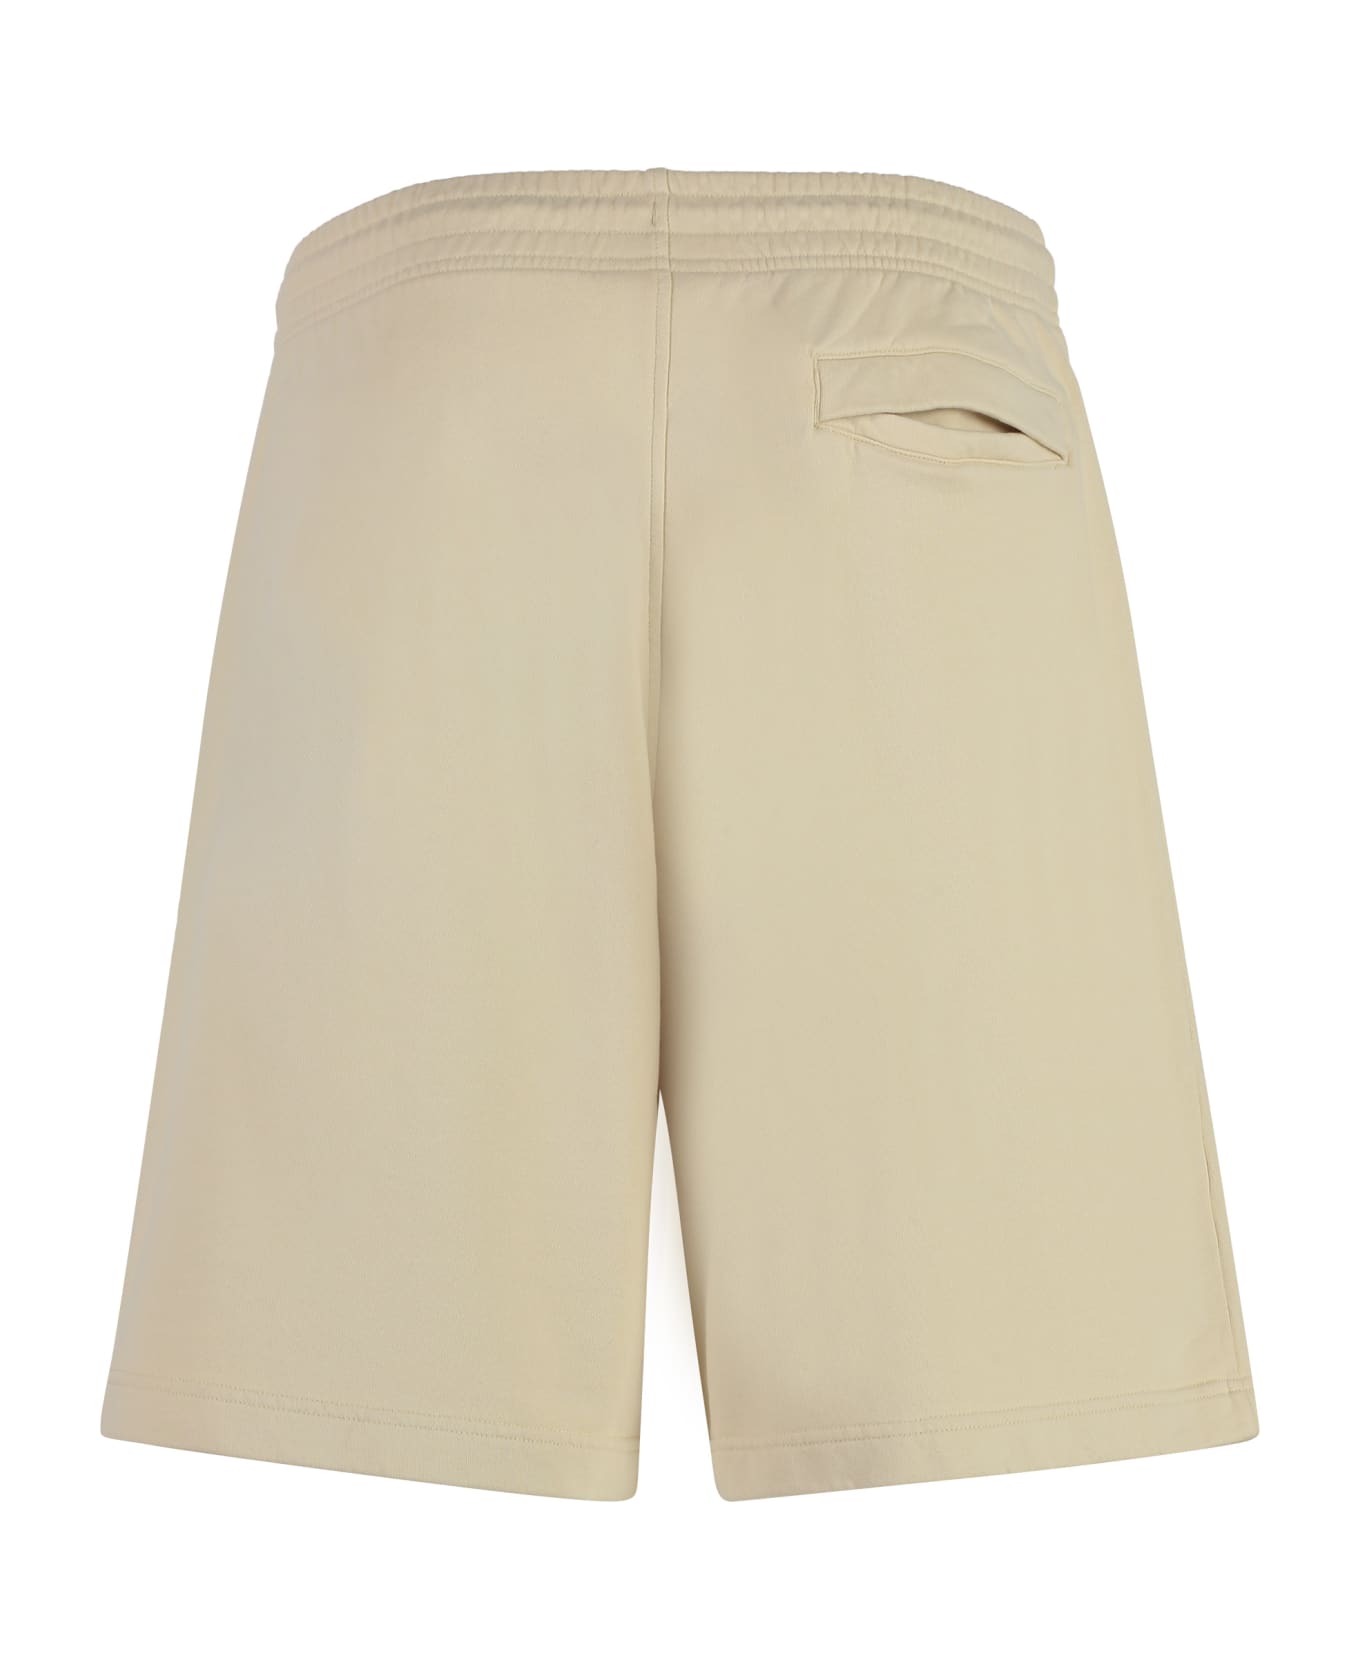 Maison Kitsuné Cotton Bermuda Shorts - Beige ショートパンツ